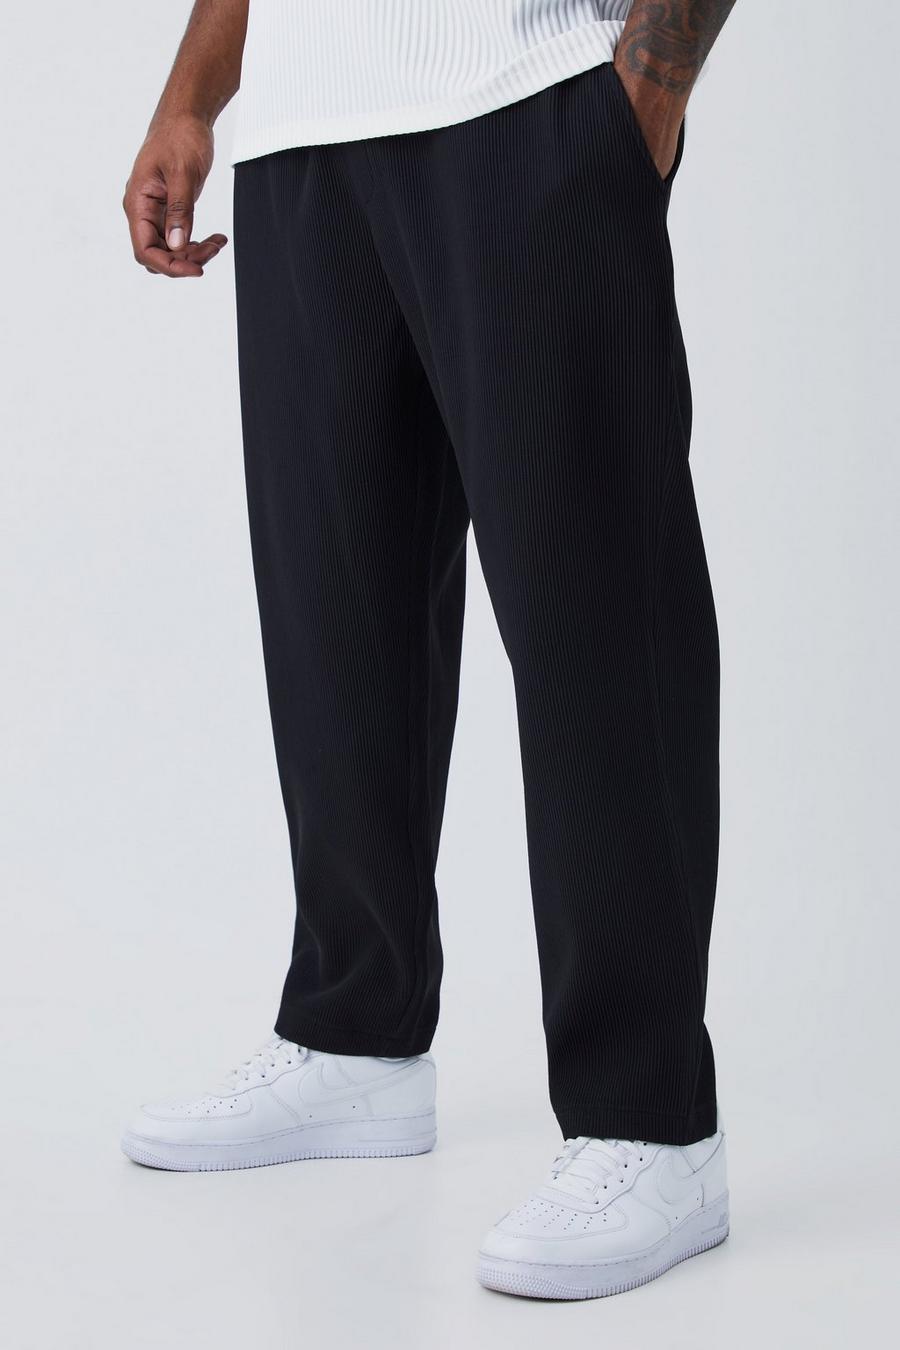 Pantalón Plus plisado ajustado con cintura elástica, Black